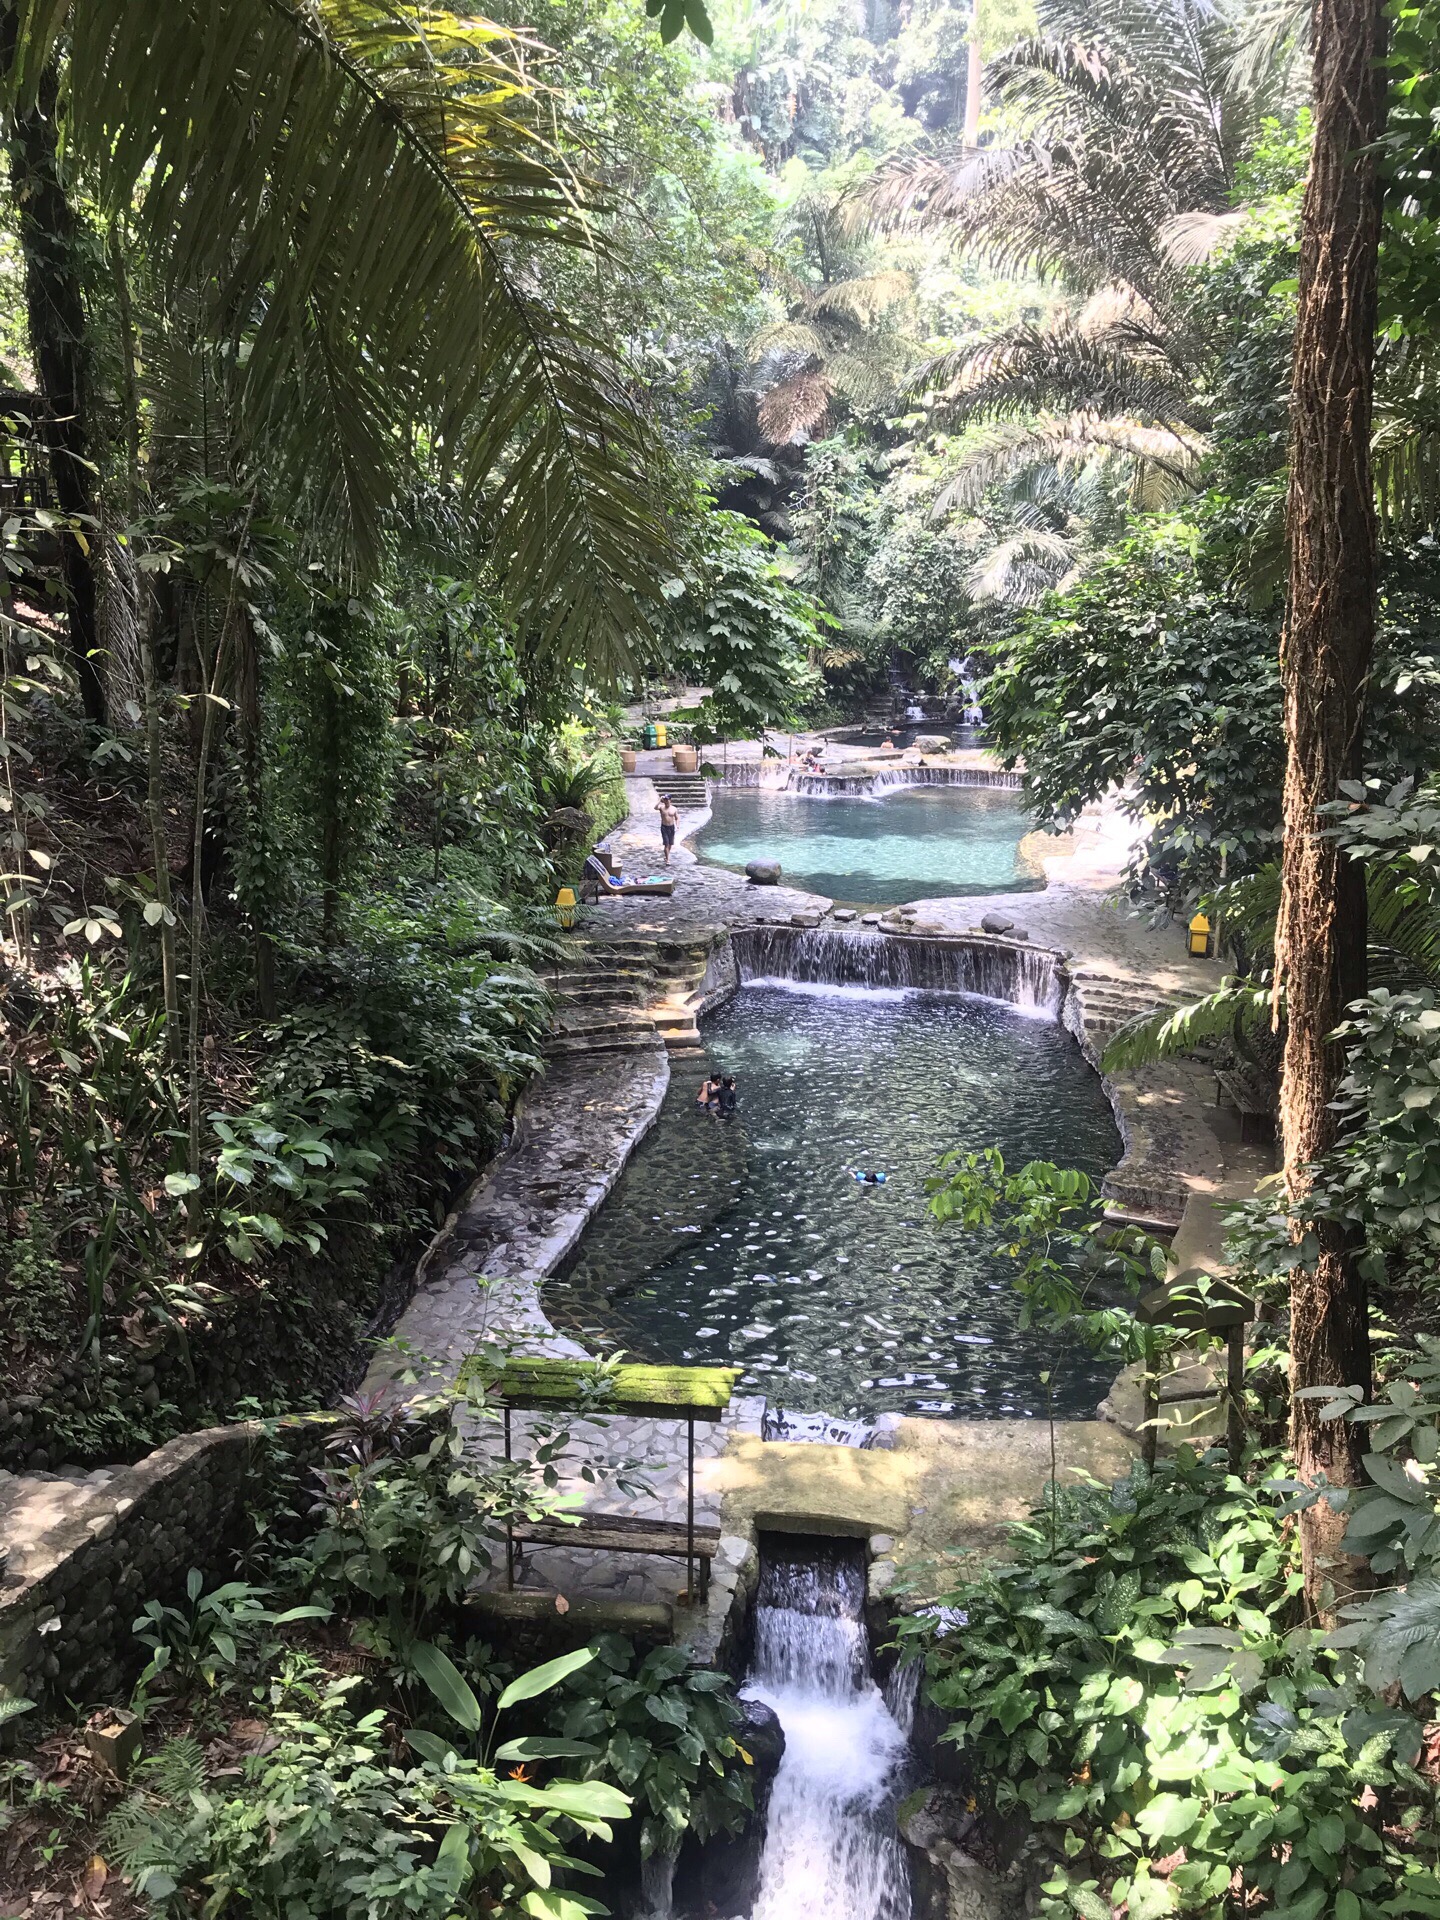 Hidden Valley Springs 一个在山谷间的温泉♨️  在大自然的环绕中 身心可以充分